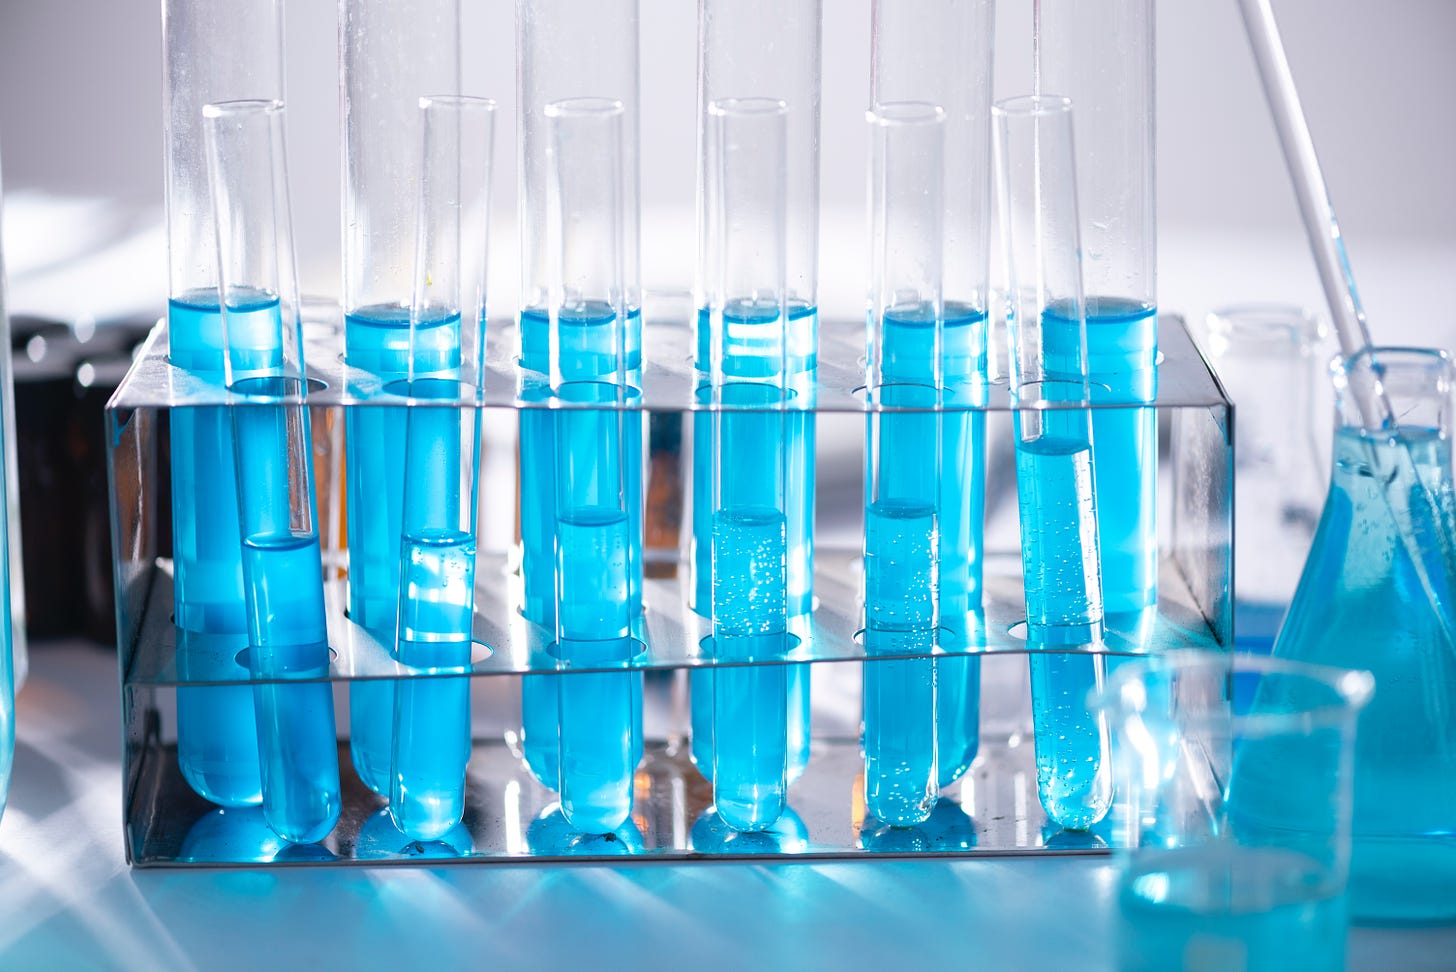 A row of beakers full of blue liquid